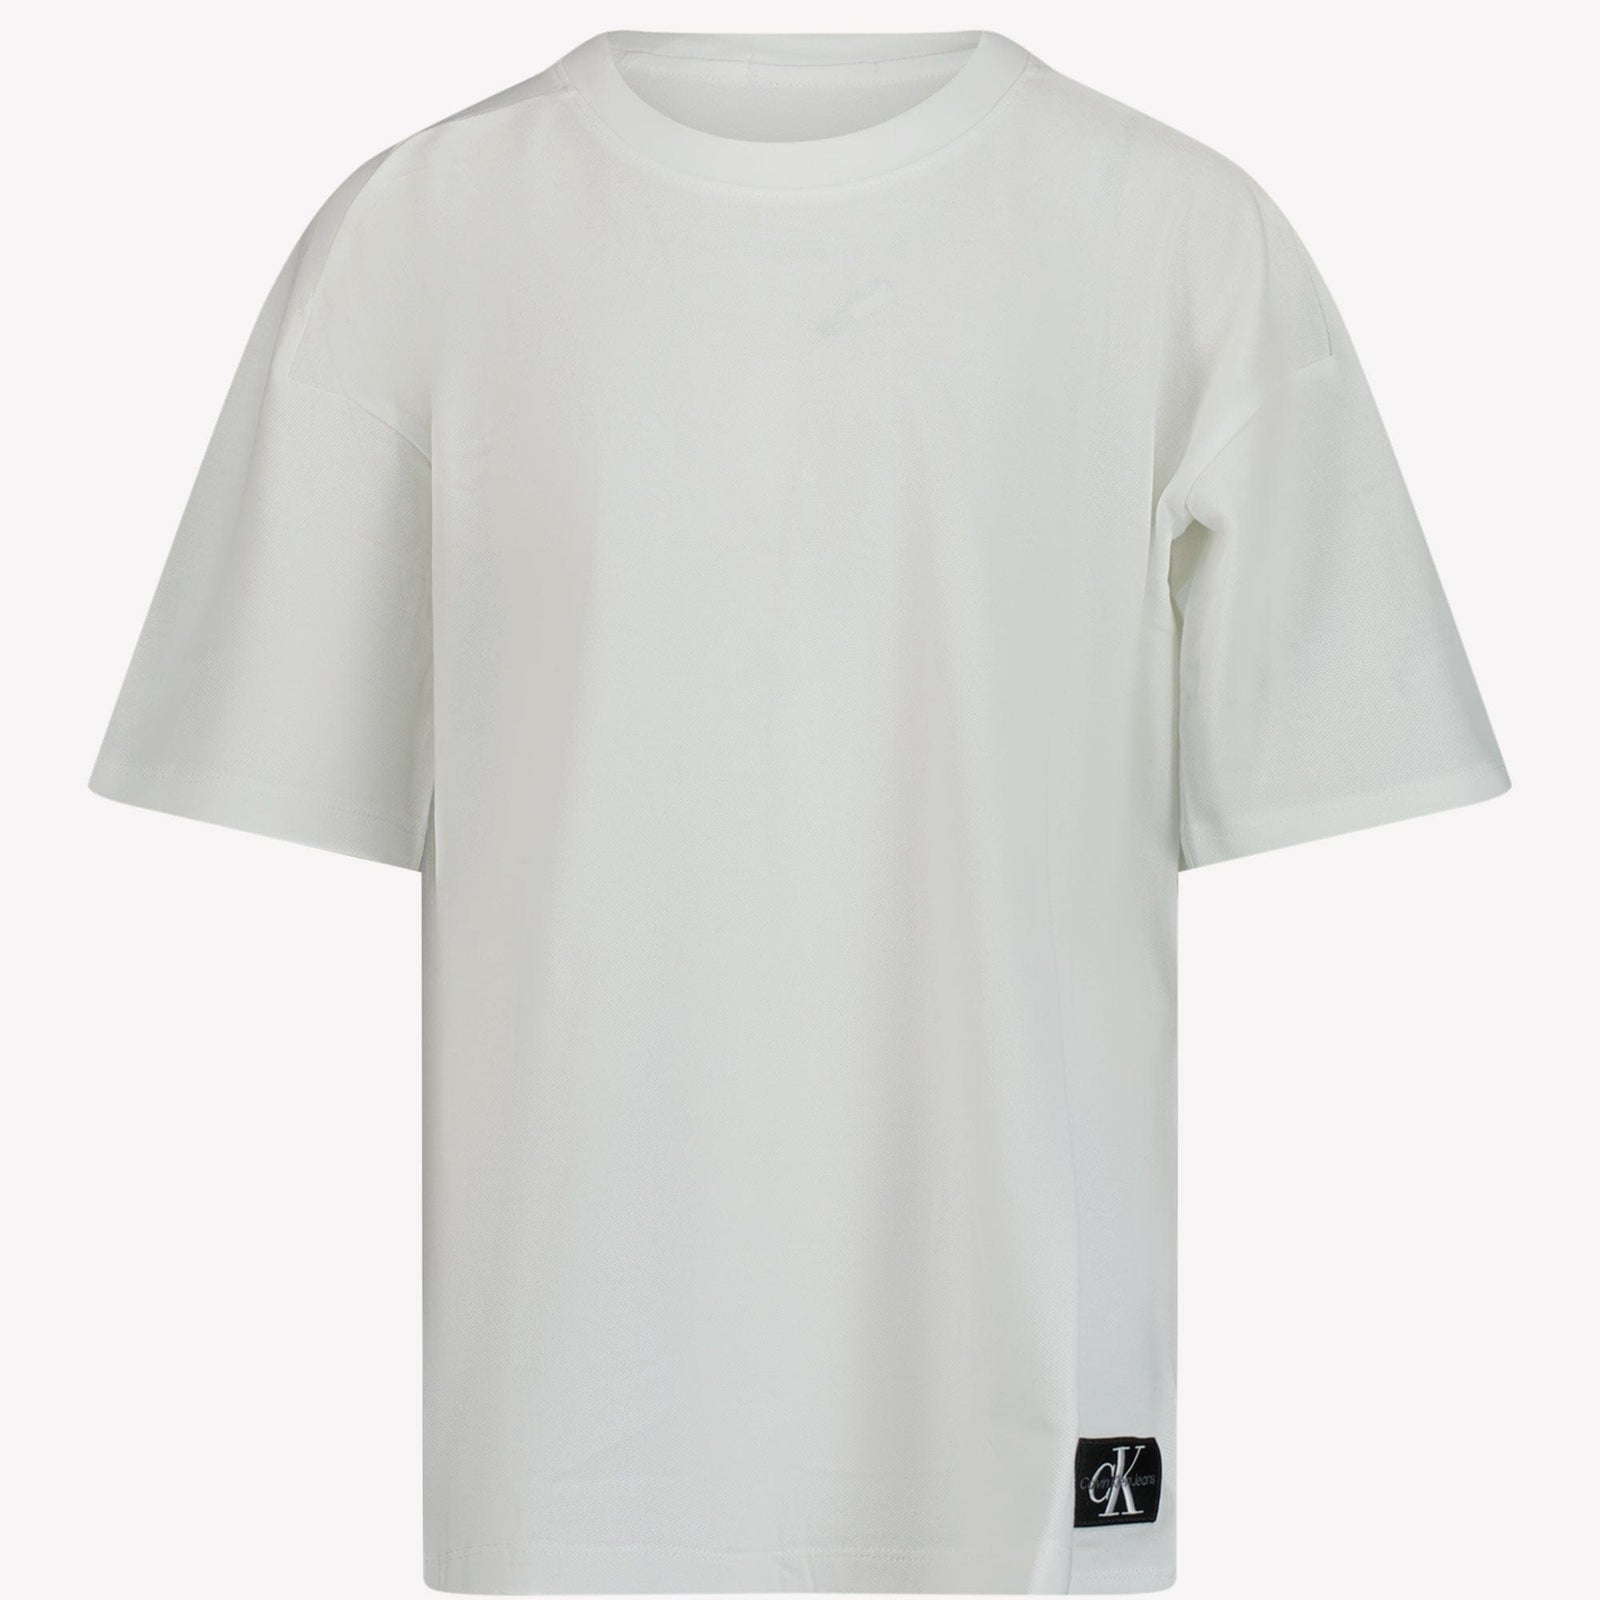 Calvin Klein Kinder Jongens T-shirt Wit 4Y